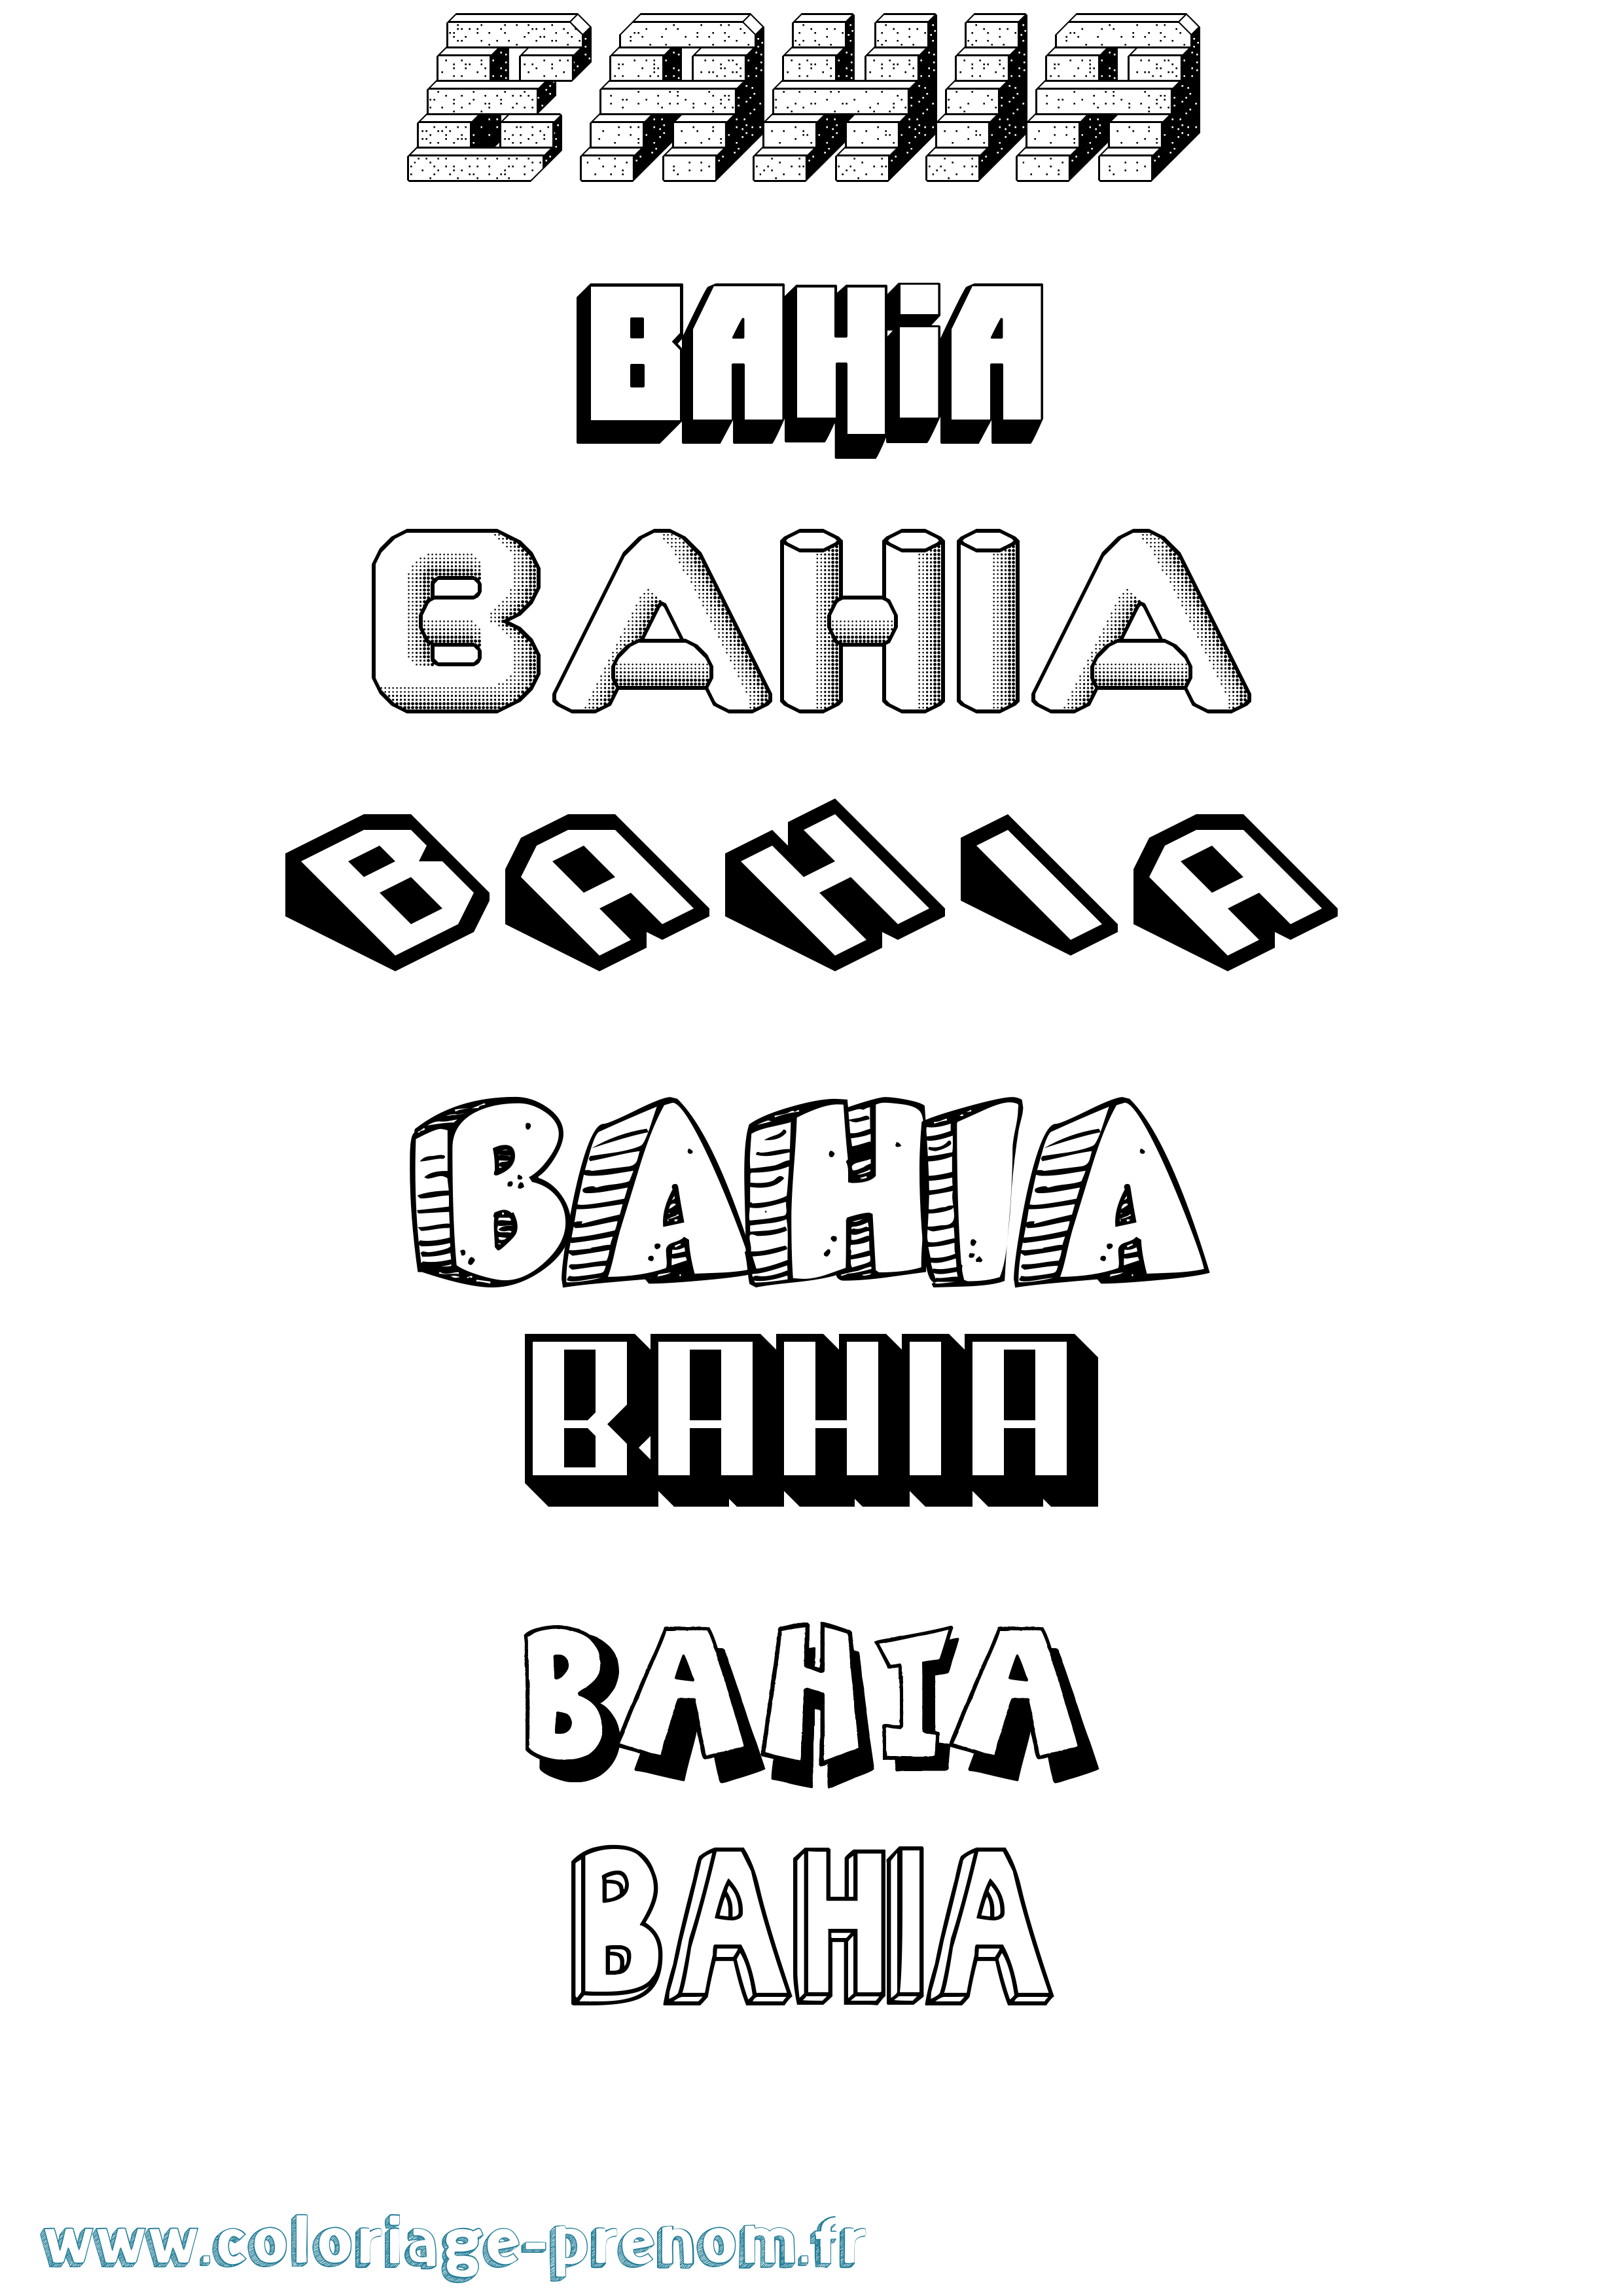 Coloriage prénom Bahia